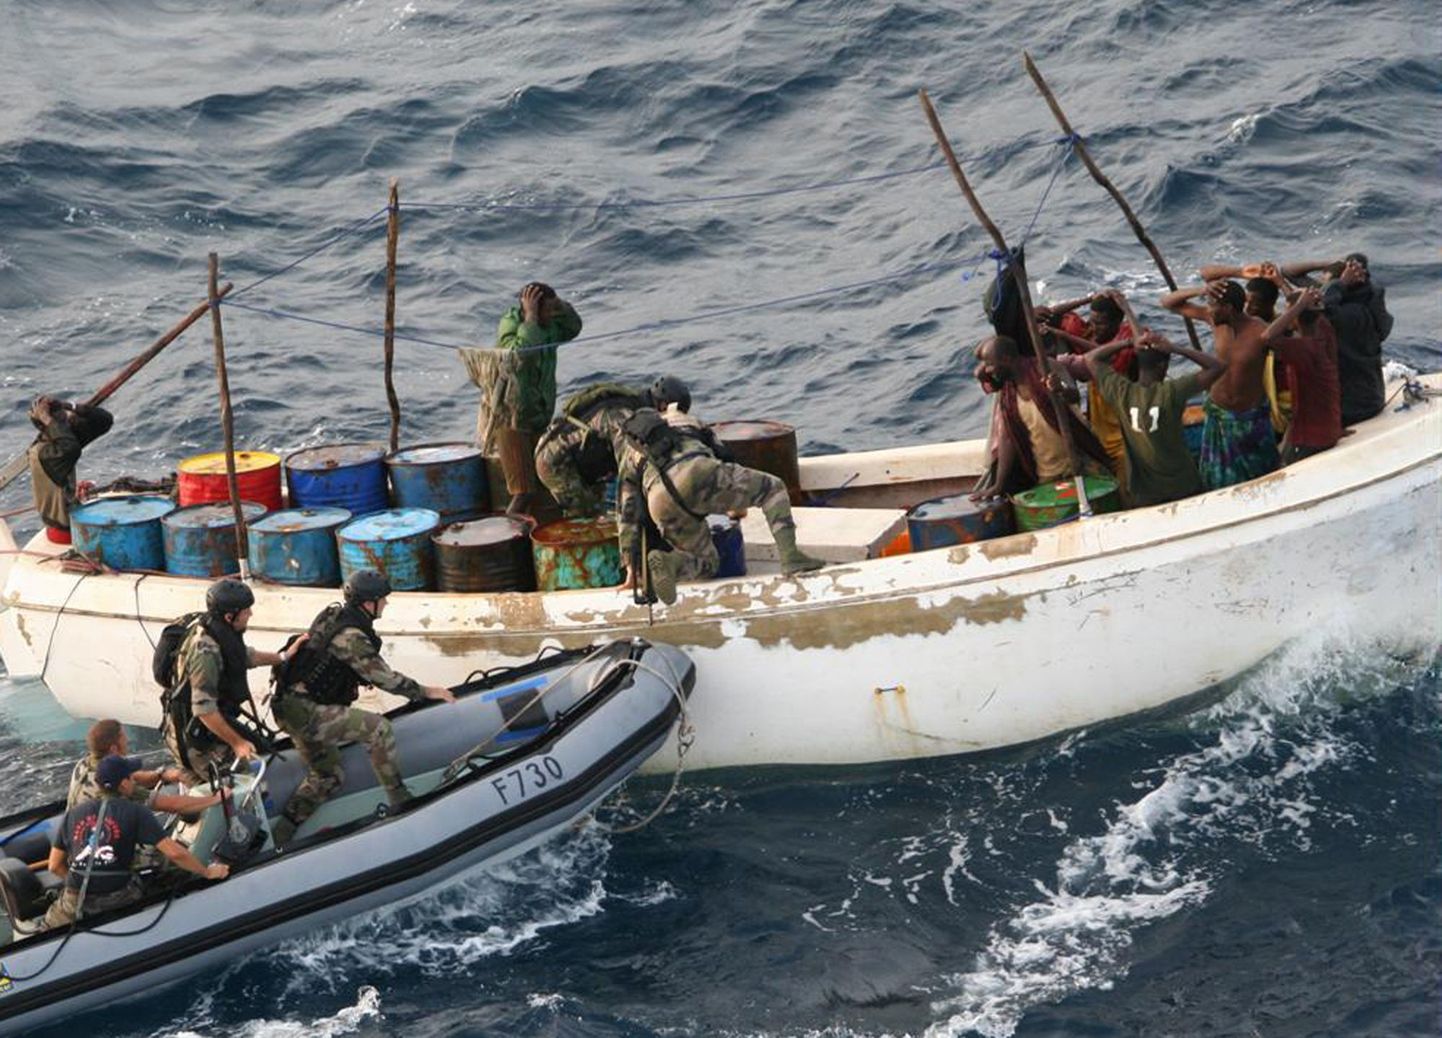 Prantsuse sõdurid 12. novembril Somaalia lähedal piraate vahistamas.